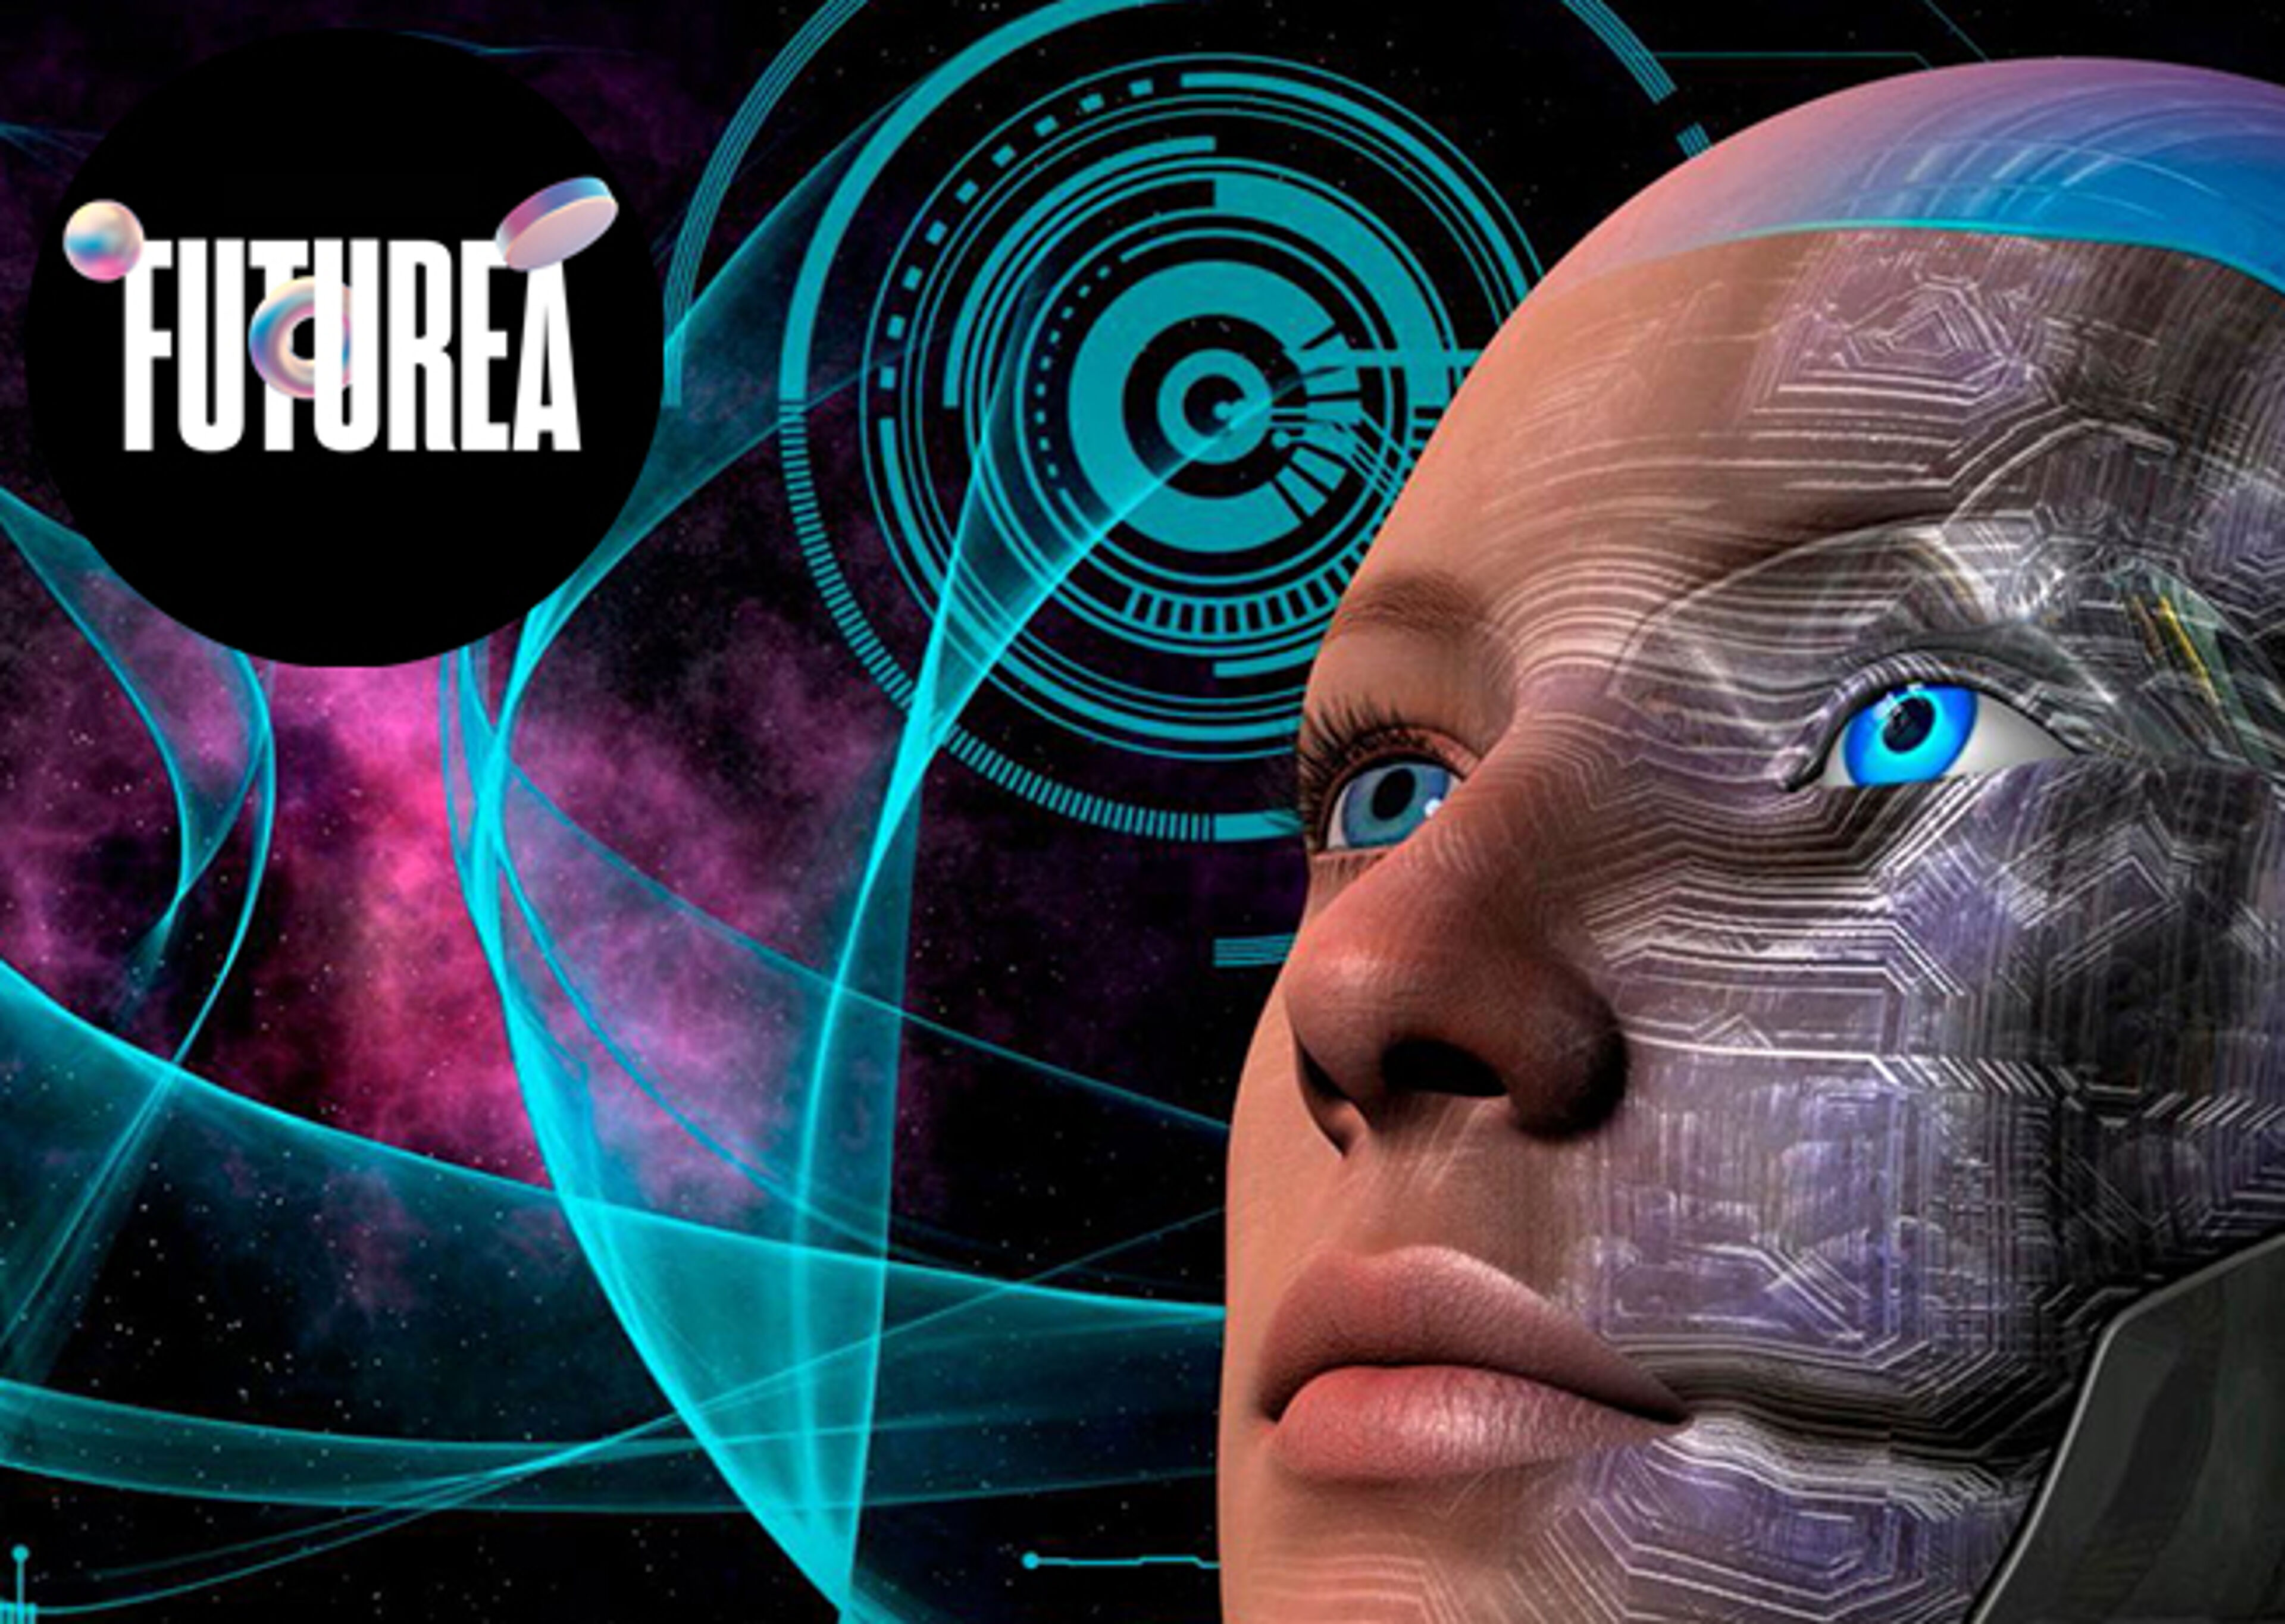 Arte digital que muestra una cara robótica con un fondo cósmico, simbolizando la inteligencia artificial avanzada.